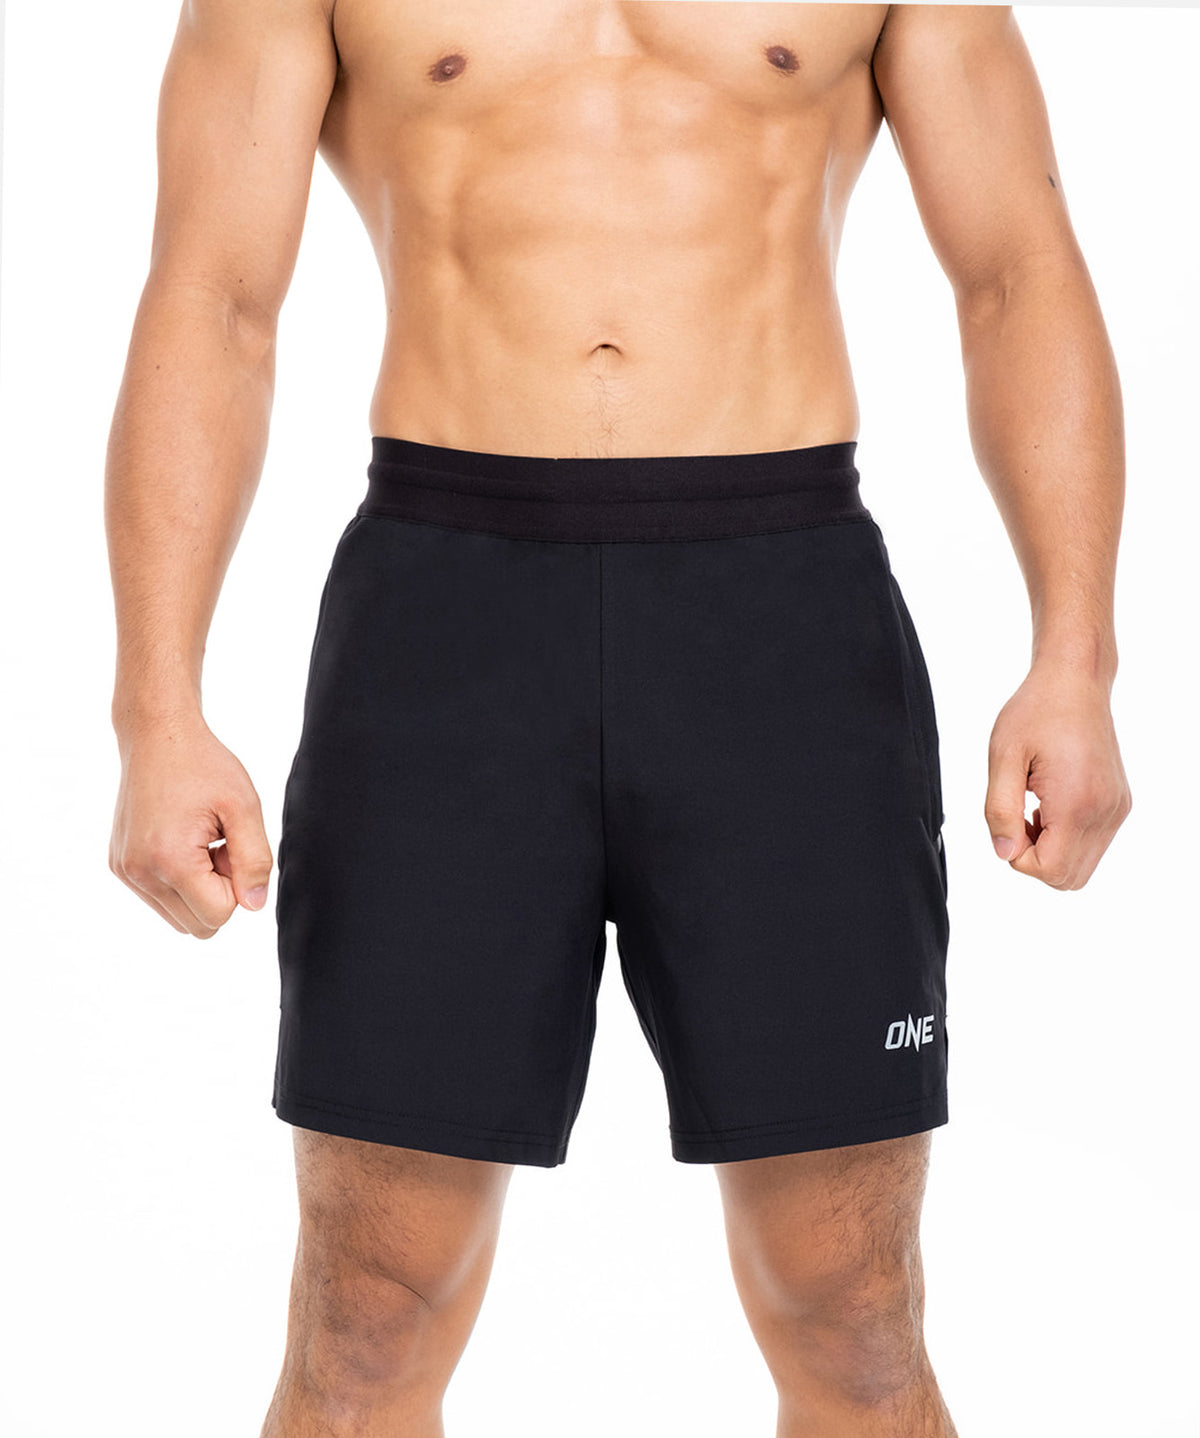 ELITE Training Shorts (Black)